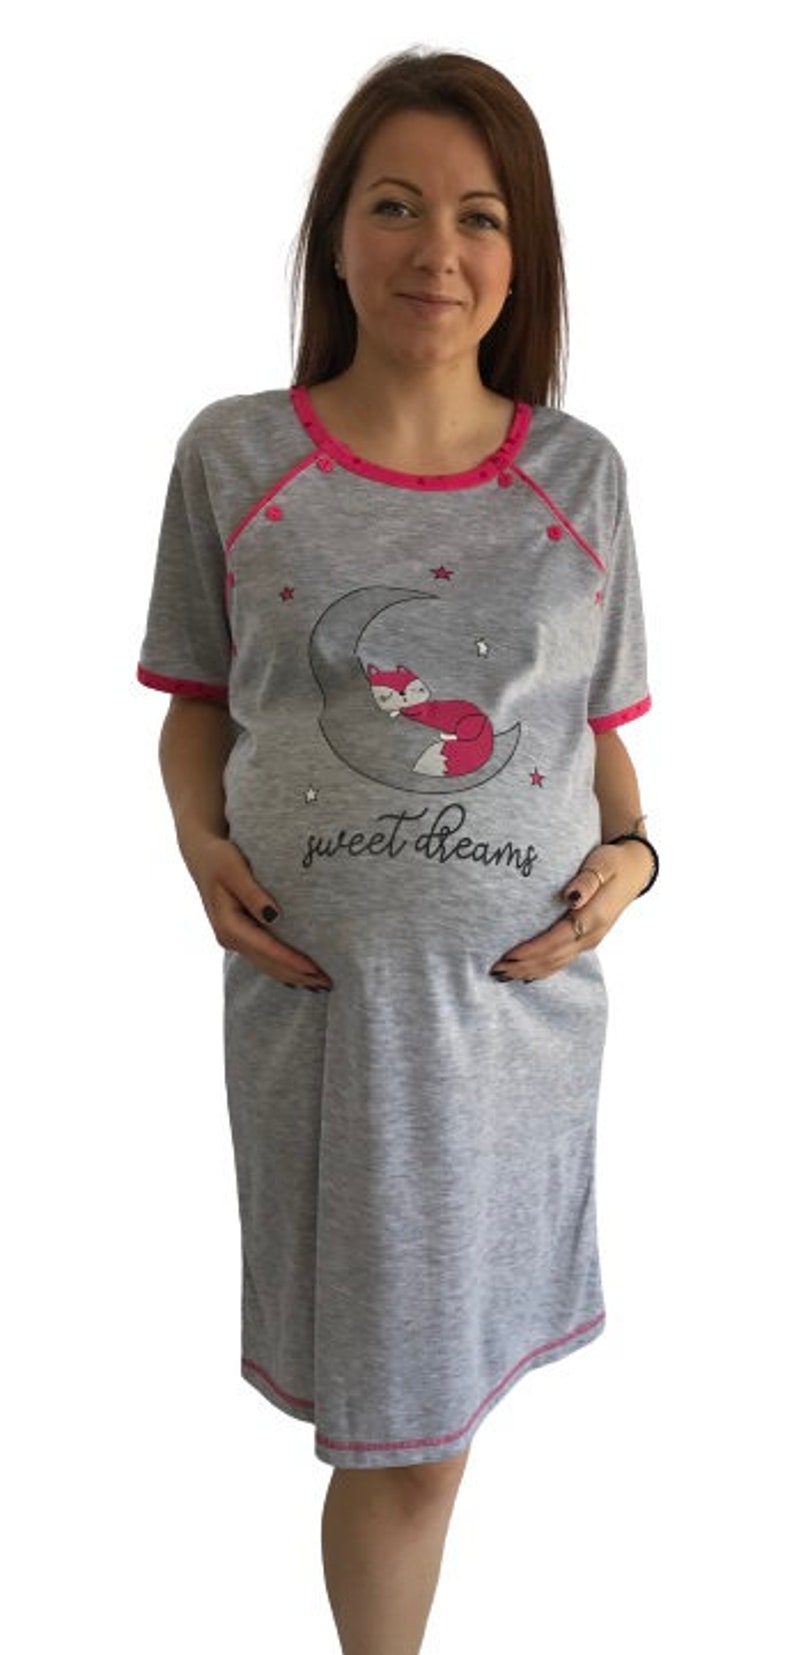 937 Birth Gown Maternity Breastfeeding Nightdress Pregnancy Nursing Nightwear Fuchsia